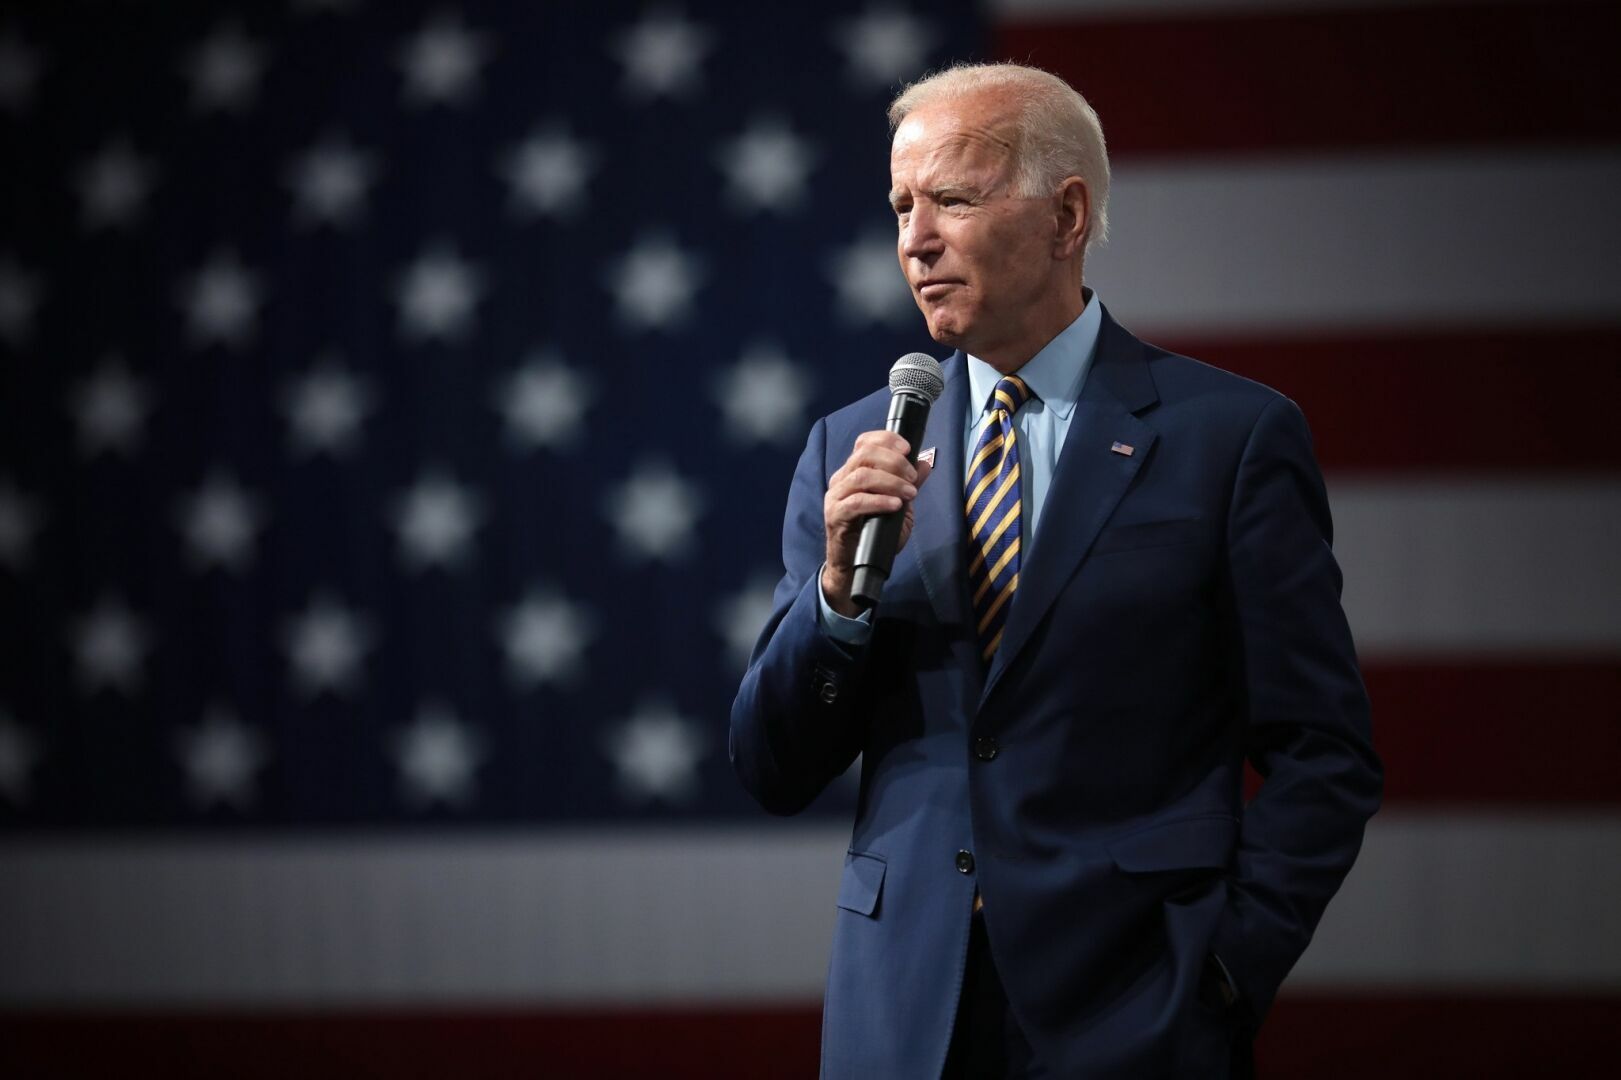 Joe Biden announces sanctions against Russia's sovereign debt